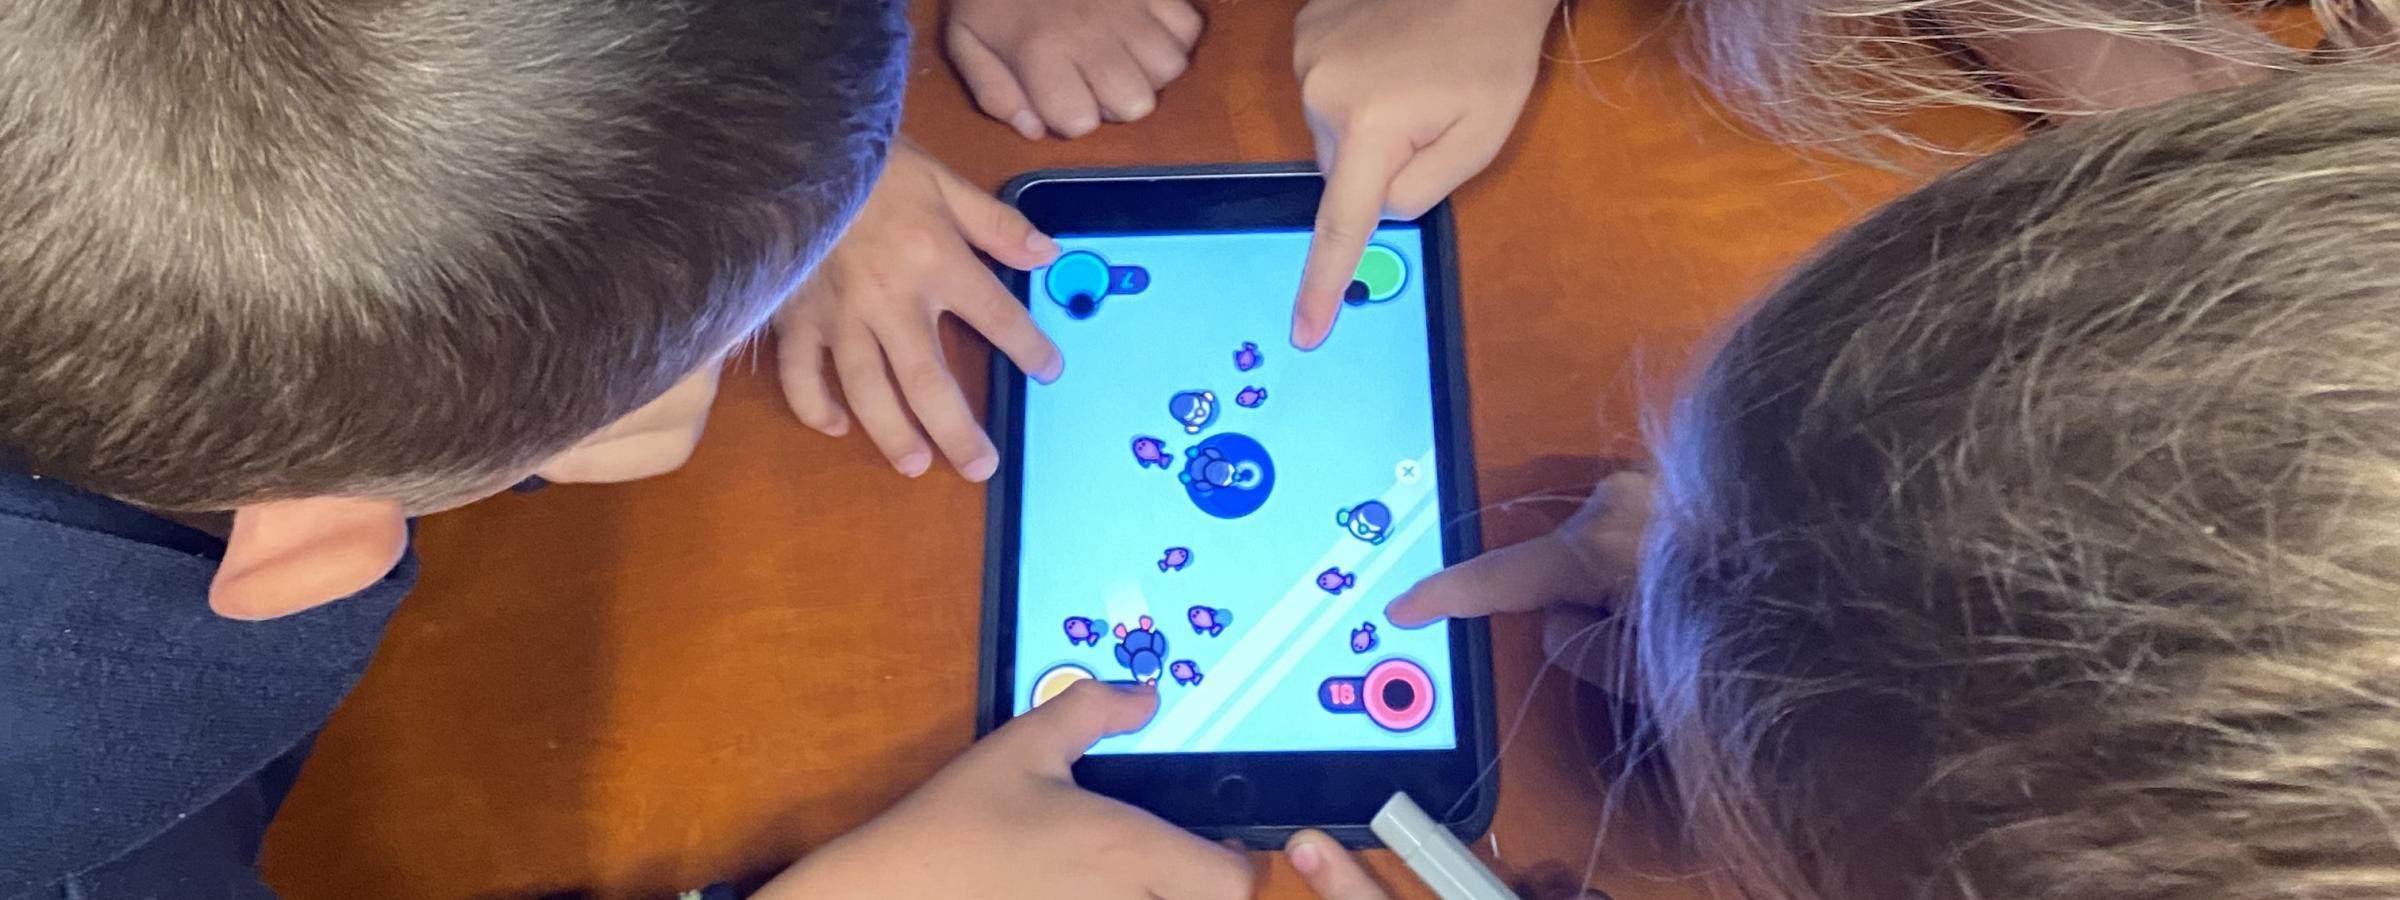 Vier kinderen spelen samen op een tablet